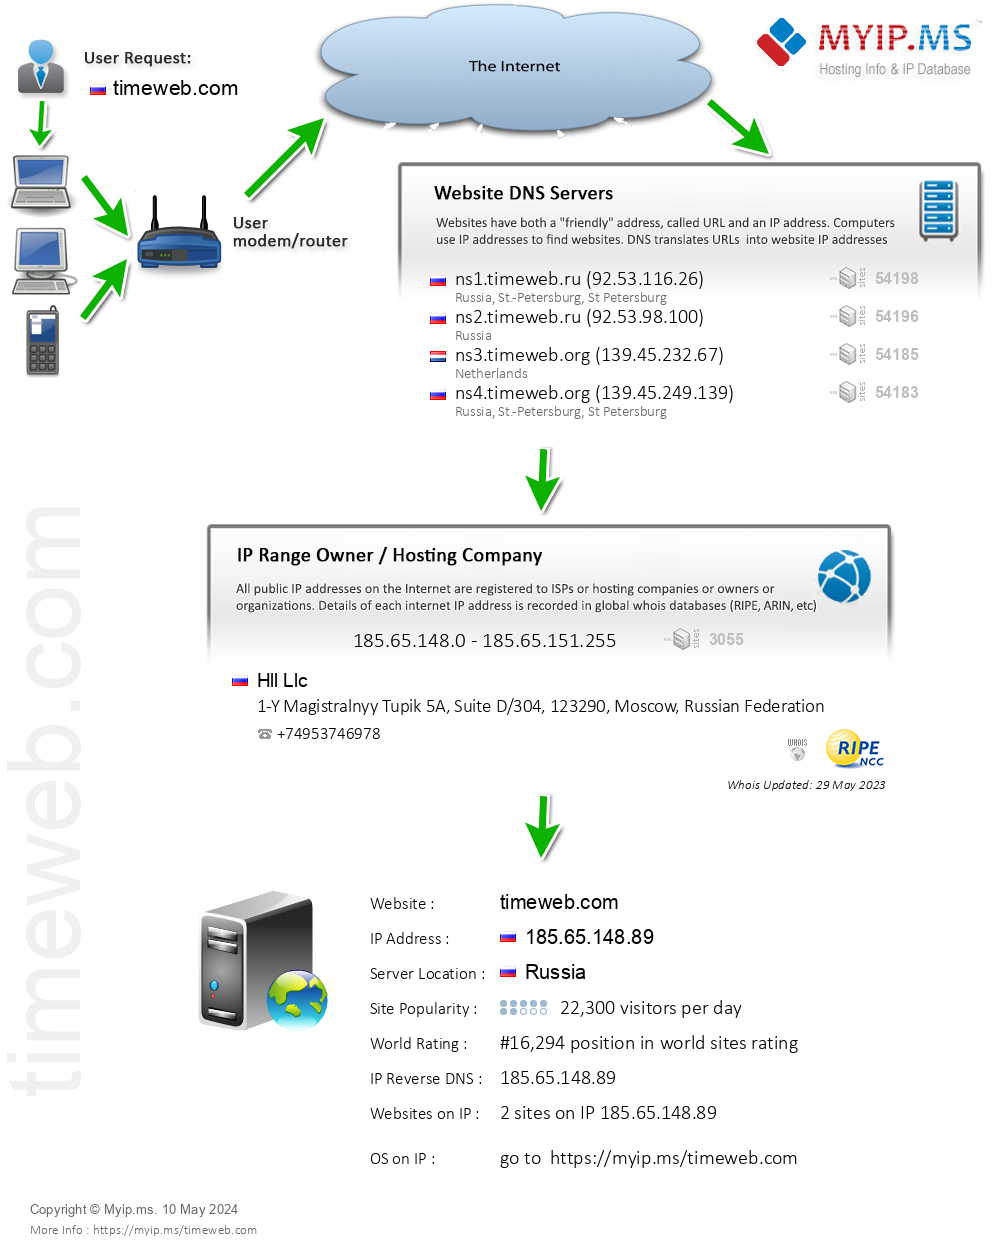 Timeweb.com - Website Hosting Visual IP Diagram